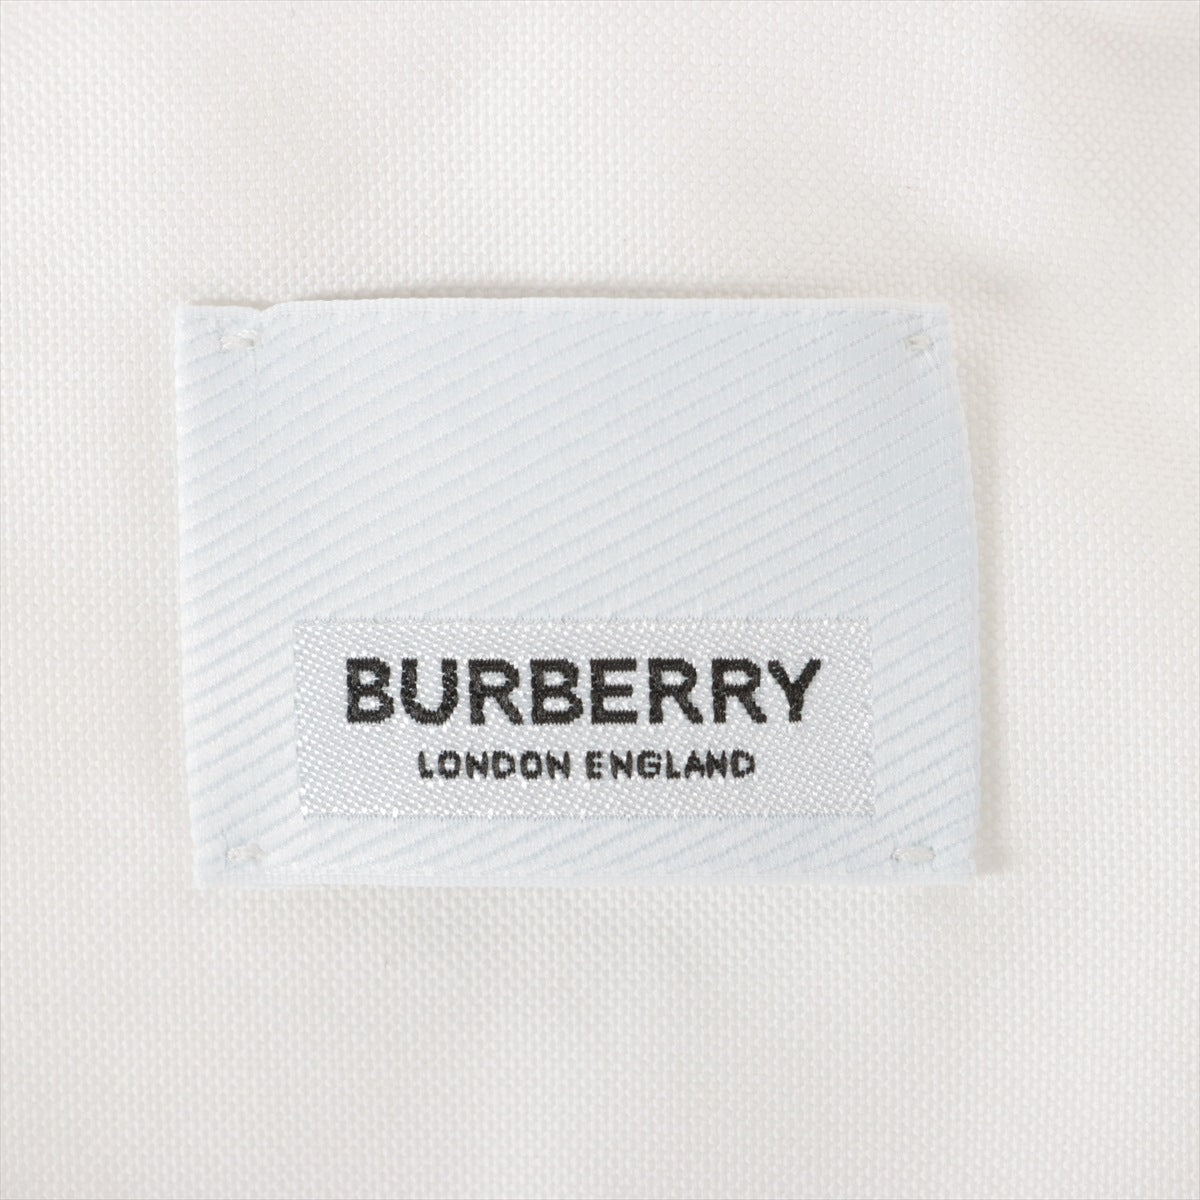 Burberry Horse ferry Tissi period Cotton Shirt XS Men's White  8036768